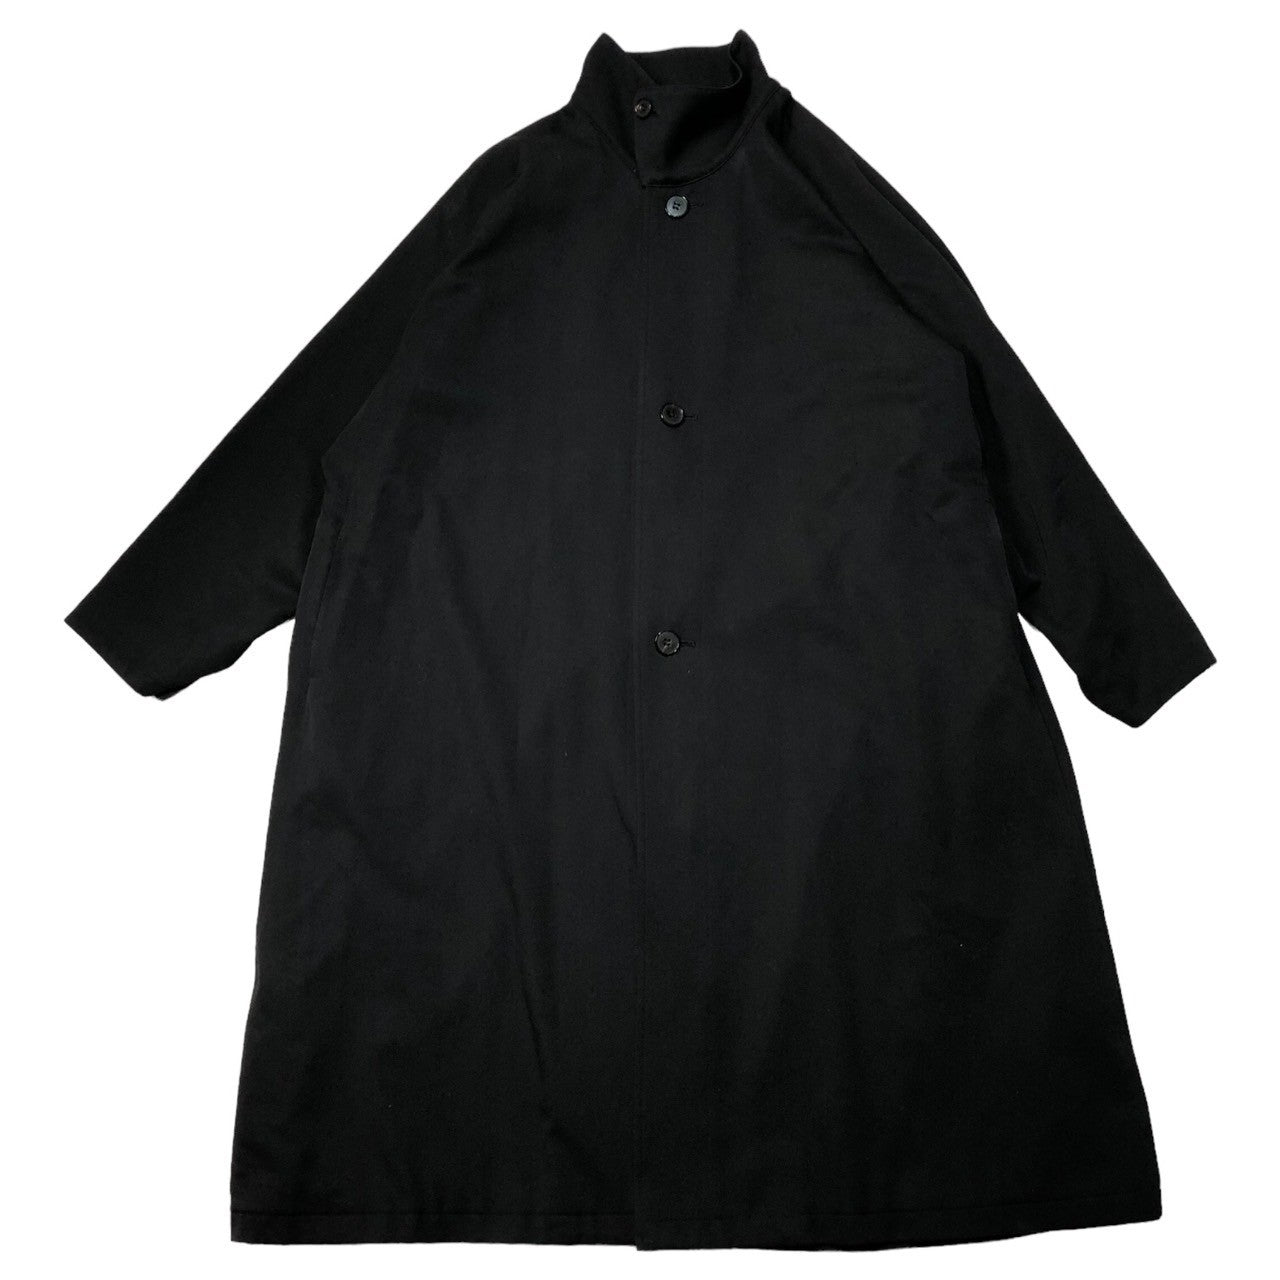 CABaN(キャバン) 23AW Wool gabardine stand collar coat ウールギャバジン スタンドカラー コート 59-09-94-09001 M ブラック 完売品 参考定価97,900円(税込)